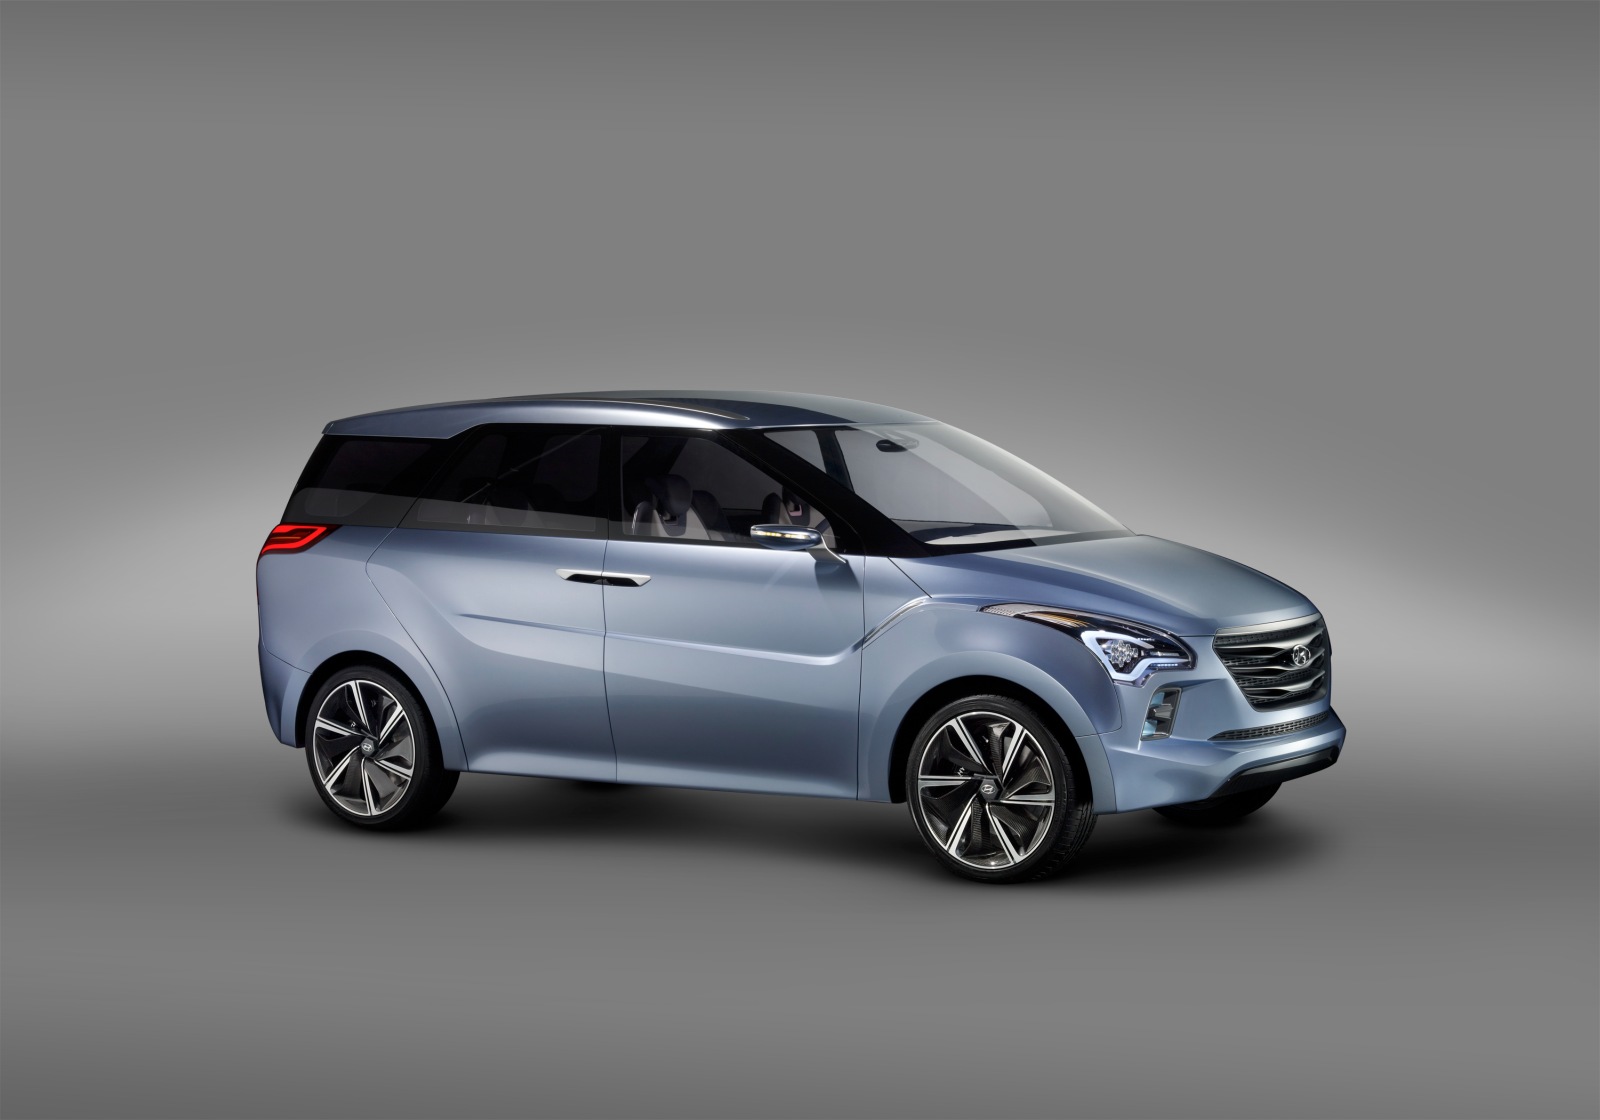 Hyundai chuẩn bị ra mắt xe 7 chỗ giống Innova